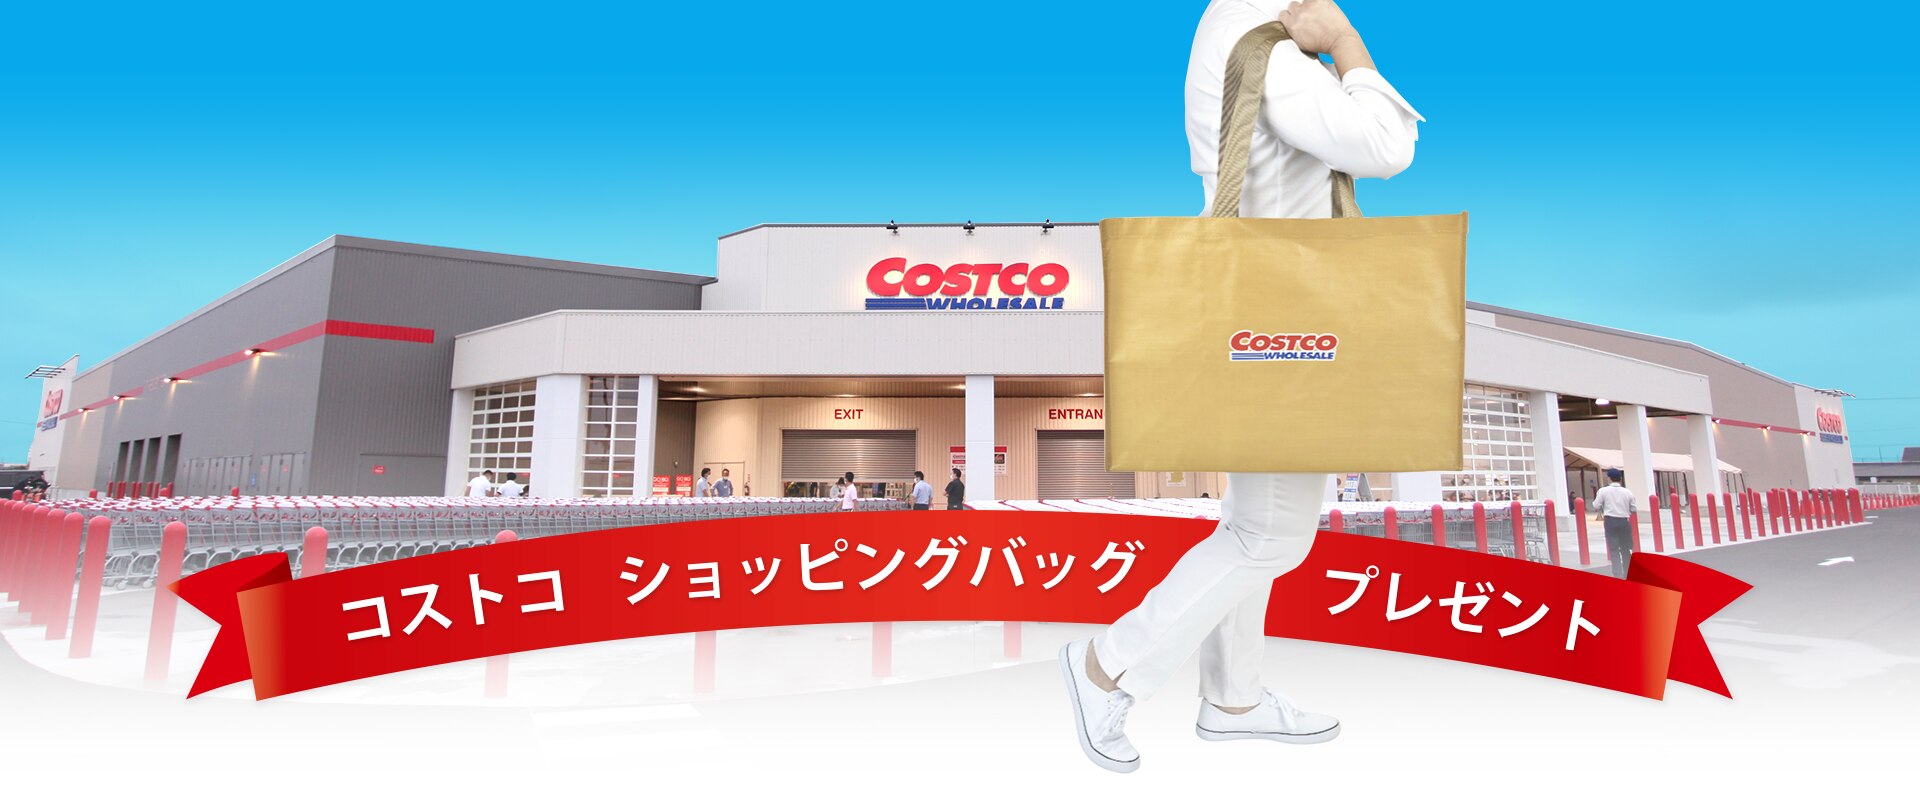 コストコ ショッピングバッグプレゼント | Costco Japan